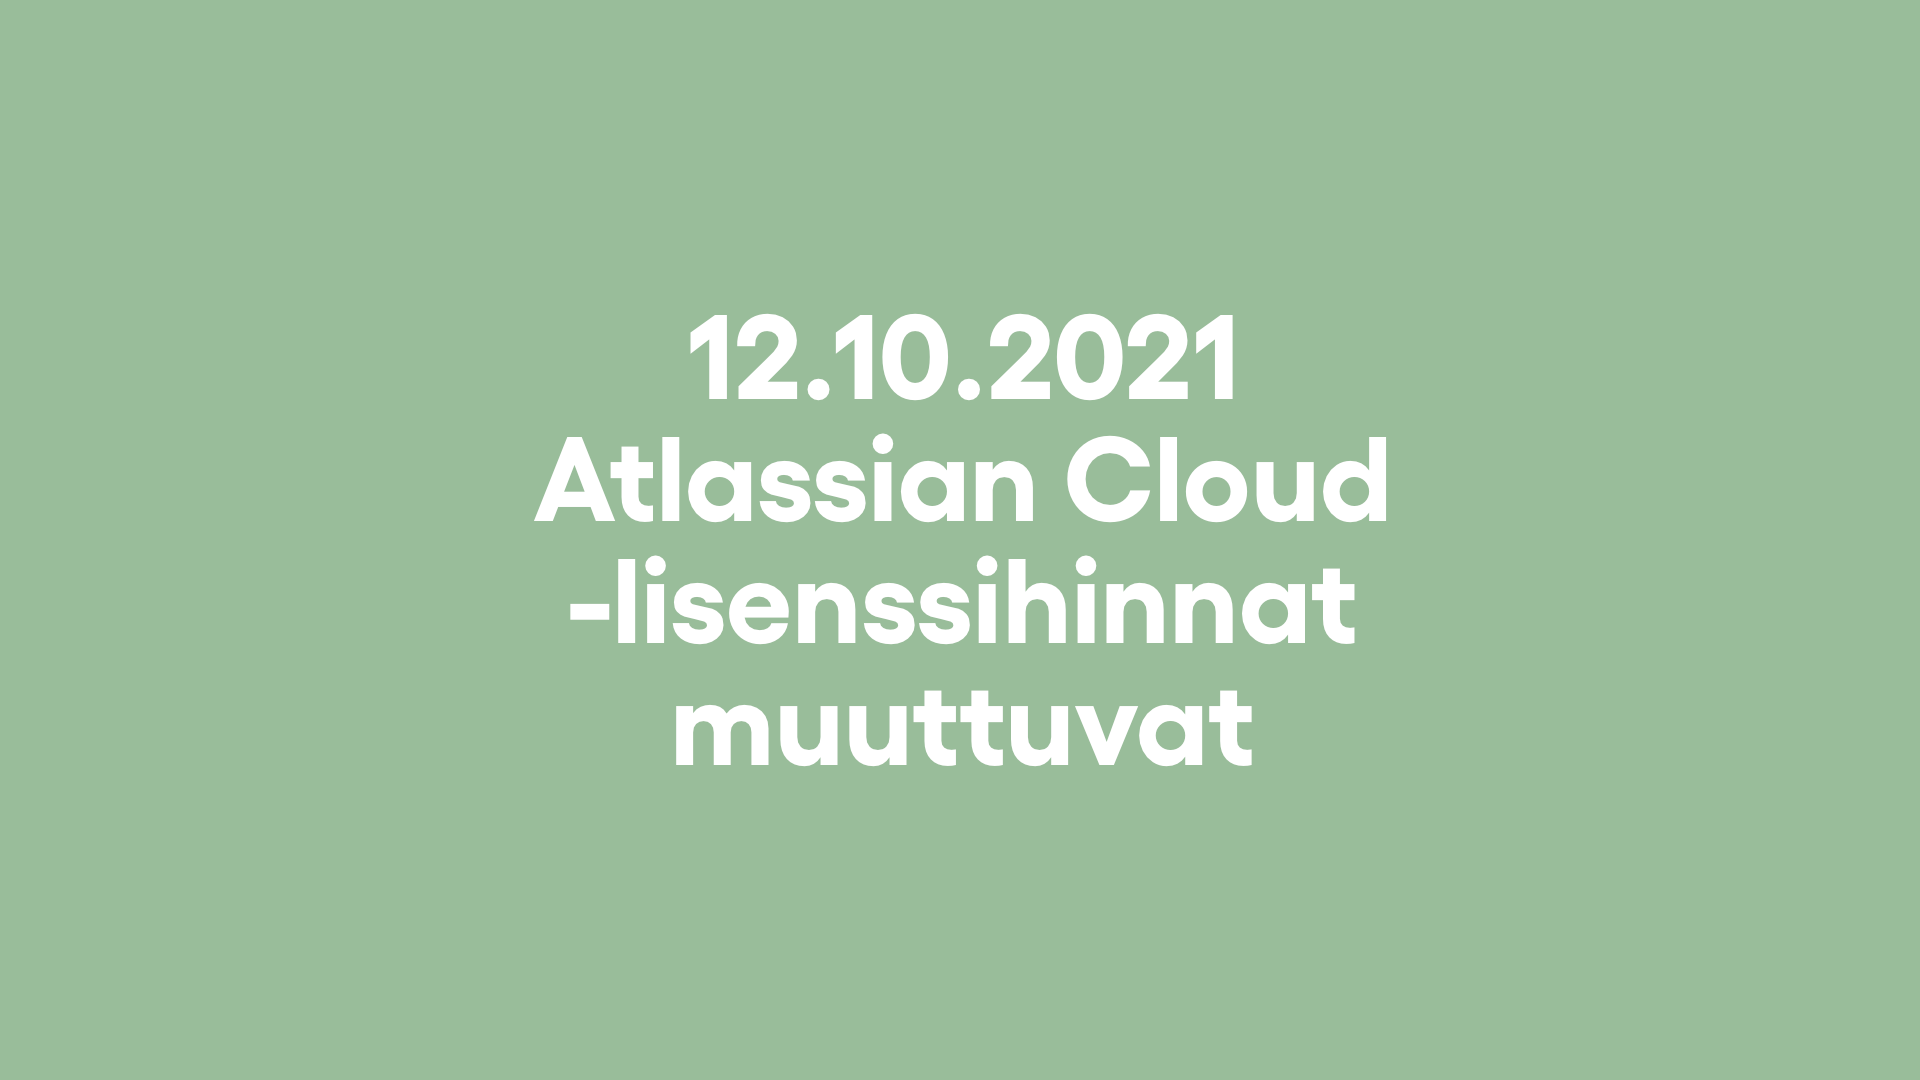 Atlassian Cloud -lisenssihinnat muuttuvat 12.10.2021 – Toimi ajoissa!